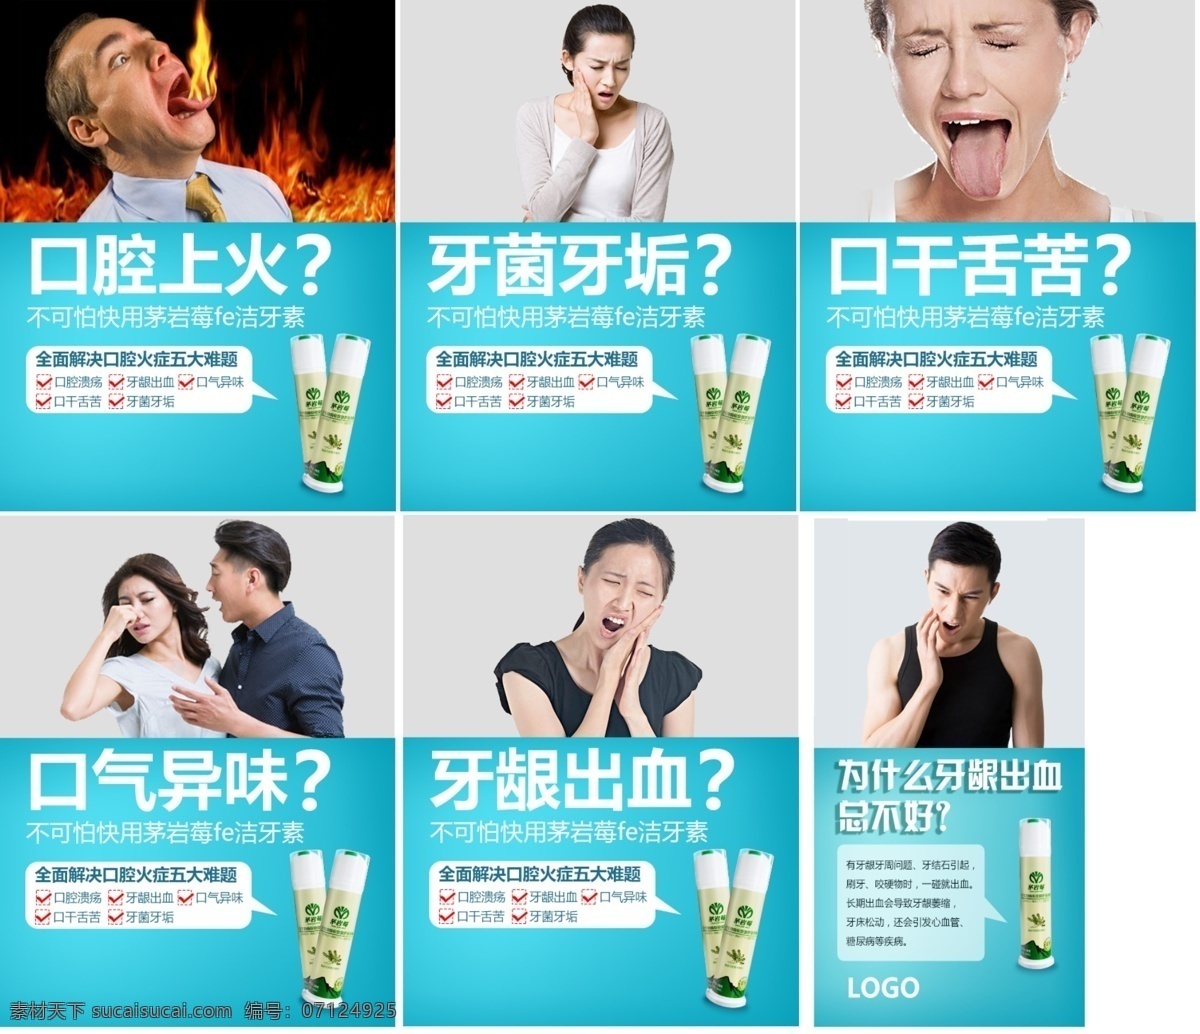 牙膏 洁 牙 素功 推广 系列 海报 洁牙素 功能介绍 系列图 清爽 线 上线 下海 报